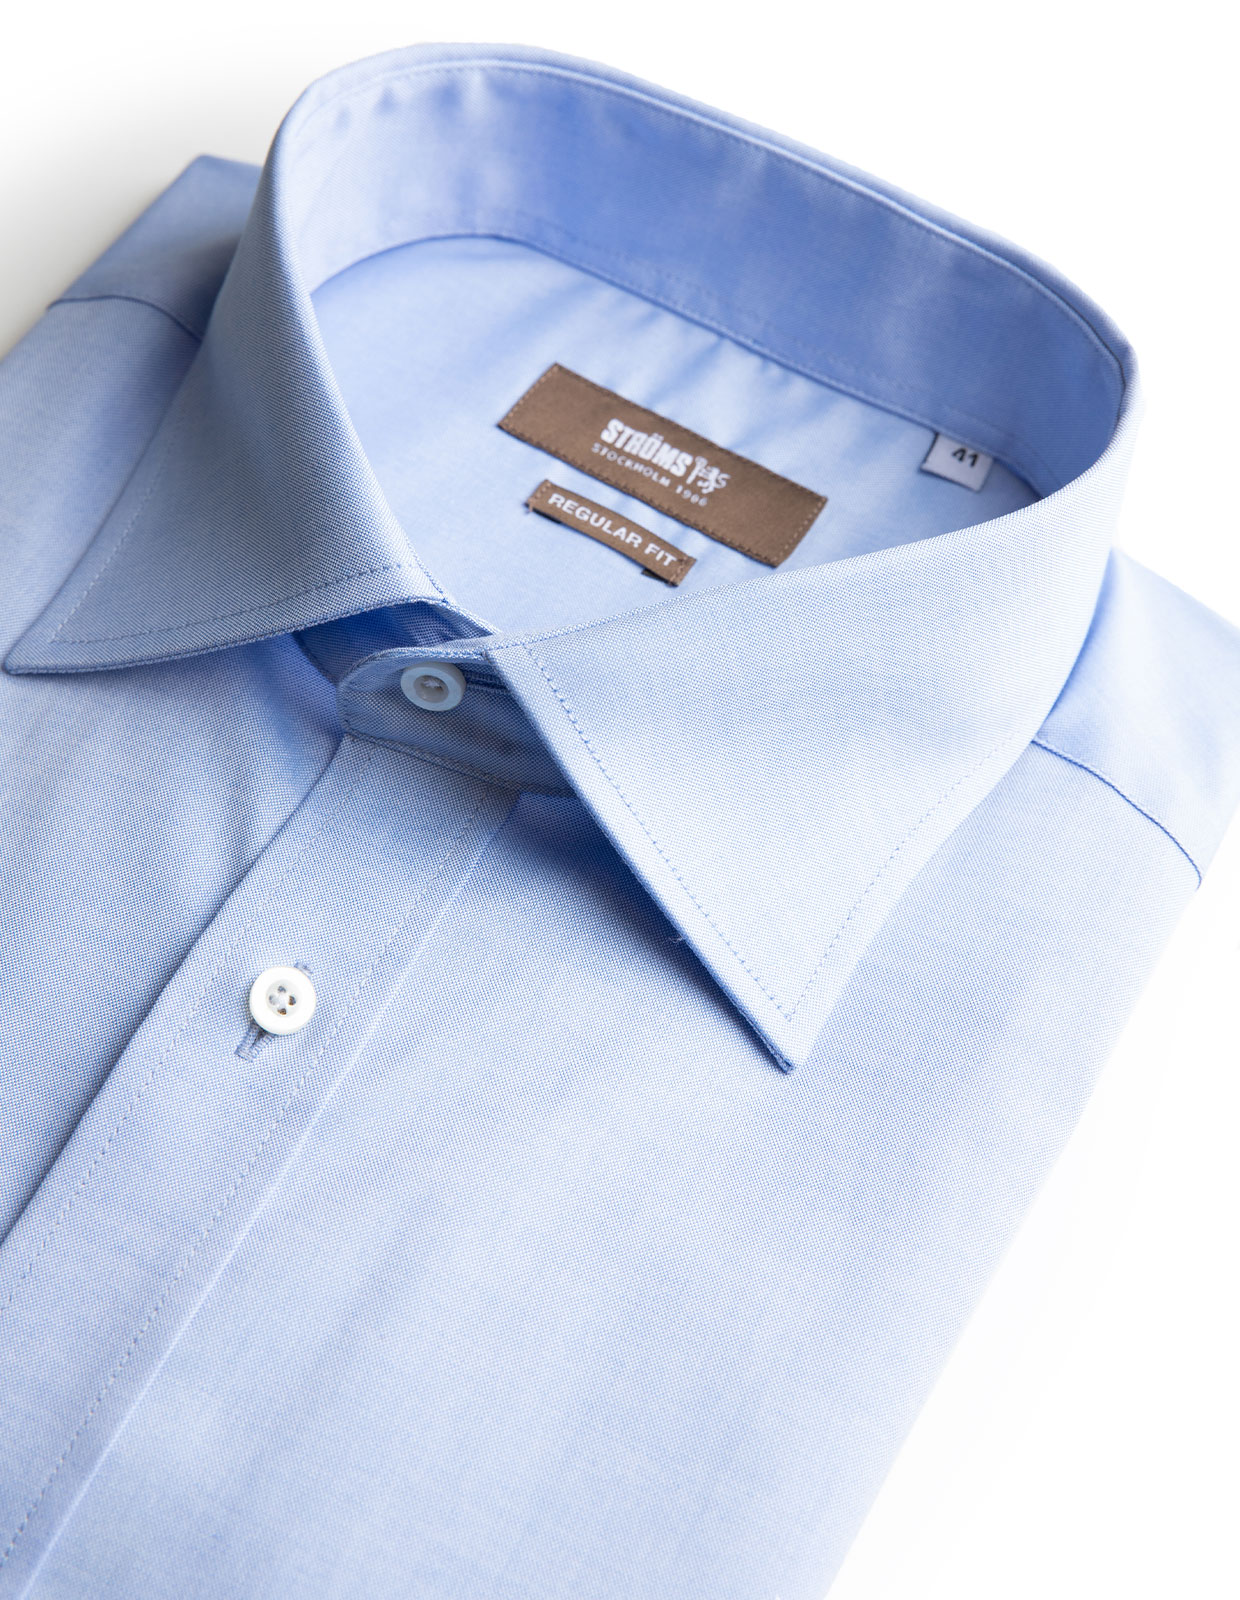 Regular Fit Pinpoint Cotton Shirt Light Blue